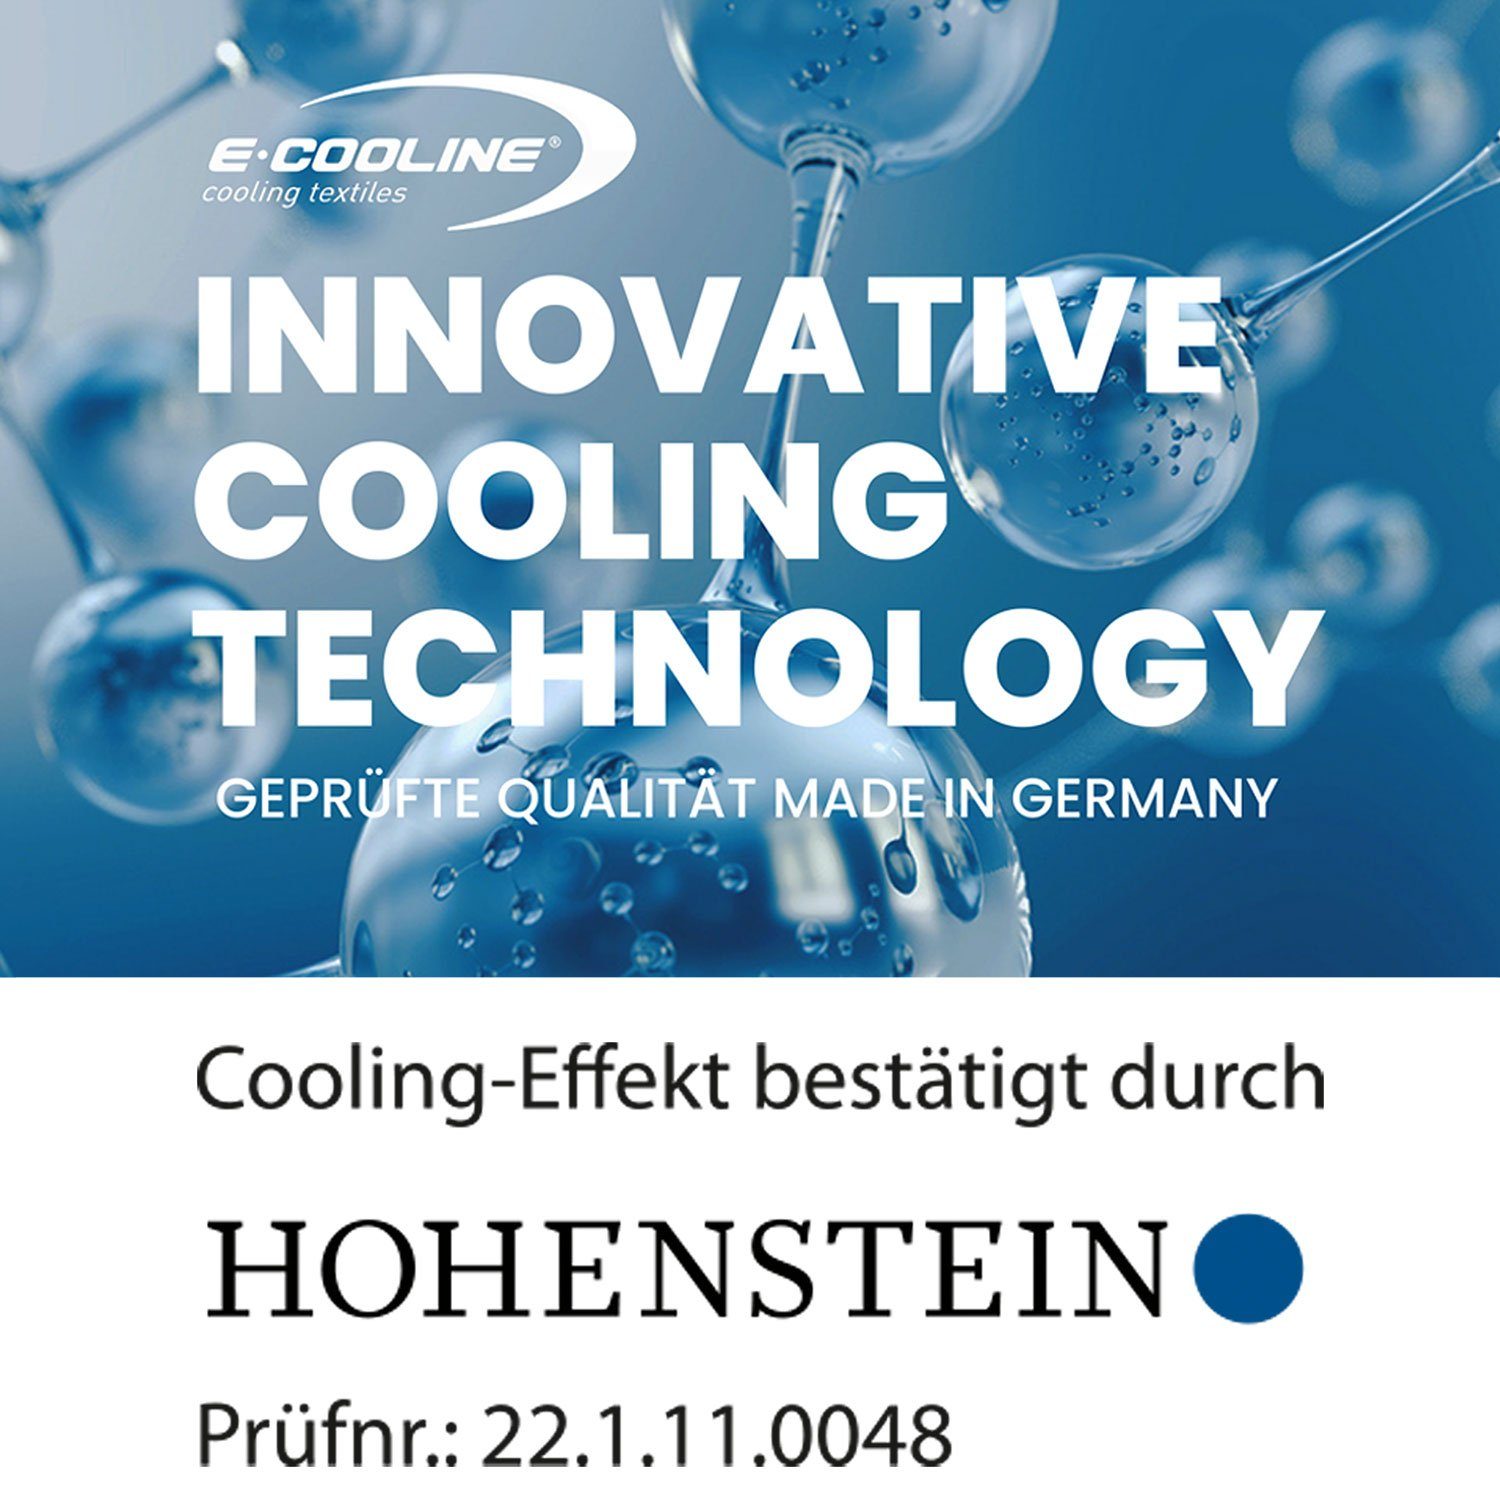 E.COOLINE Bandana - Anziehen Klimaanlage Wasser, kühlend stundenlange Kühlung durch mit - Aktivierung aktive Kühlung, Schwarz zum